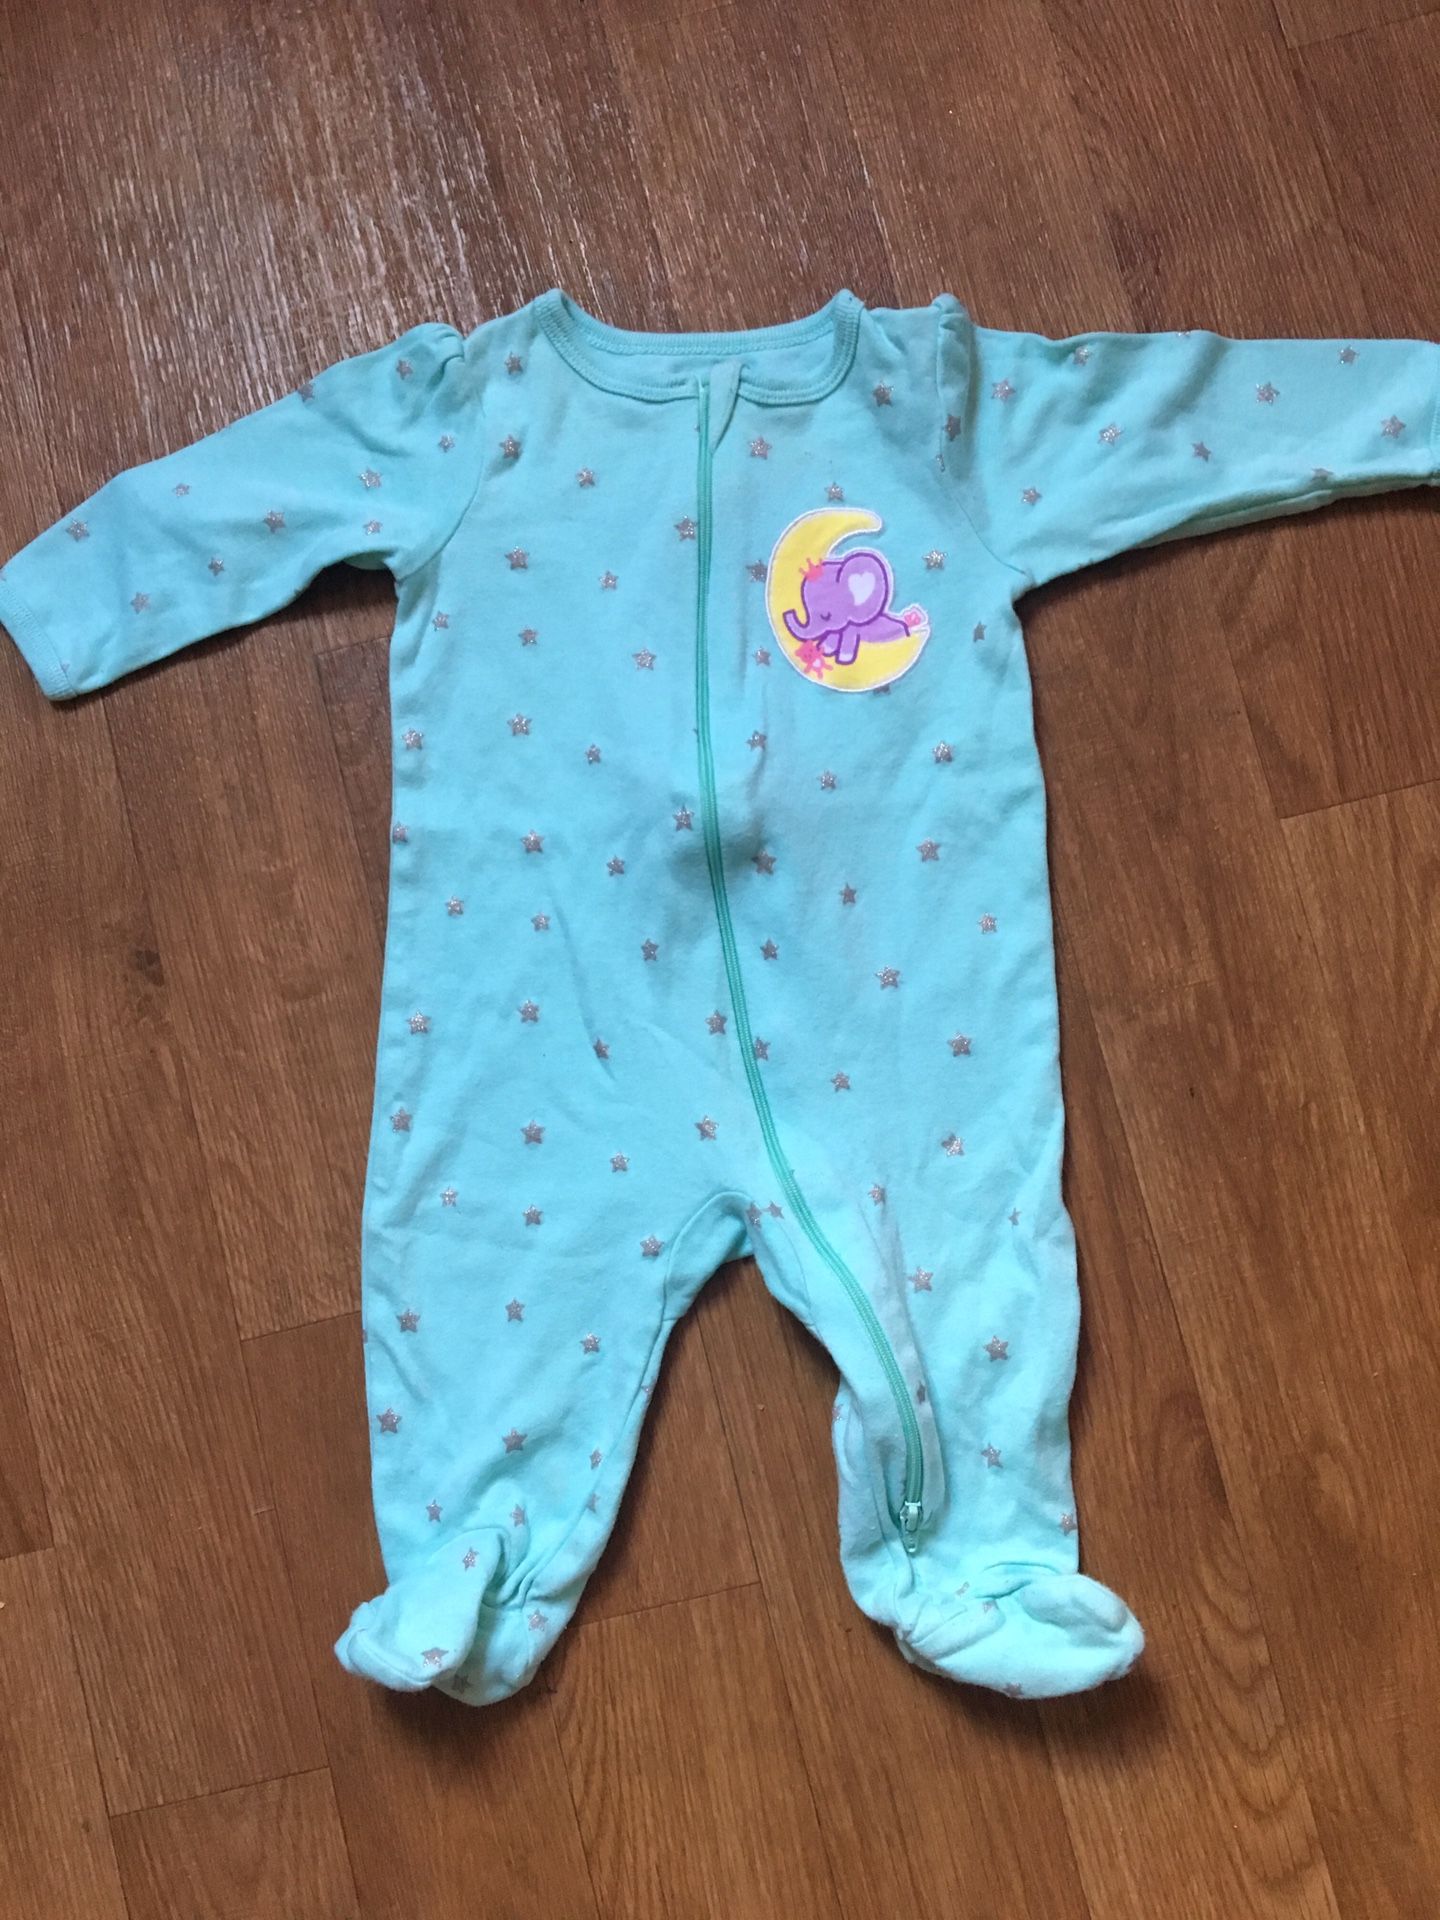 Babygirl pajamas 3/6 months